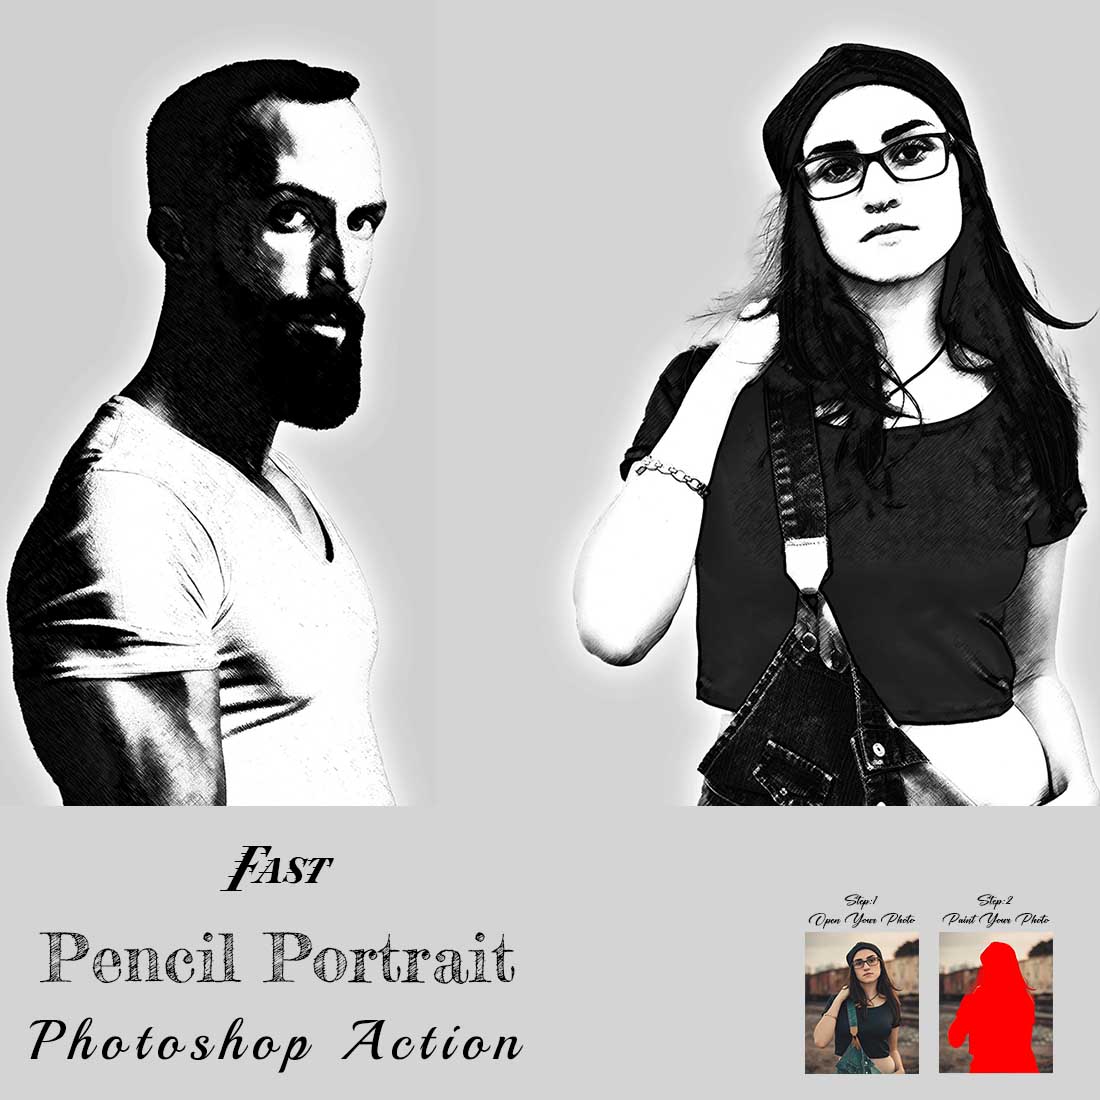 Fast Pencil Portrait Photoshop Action cover image.